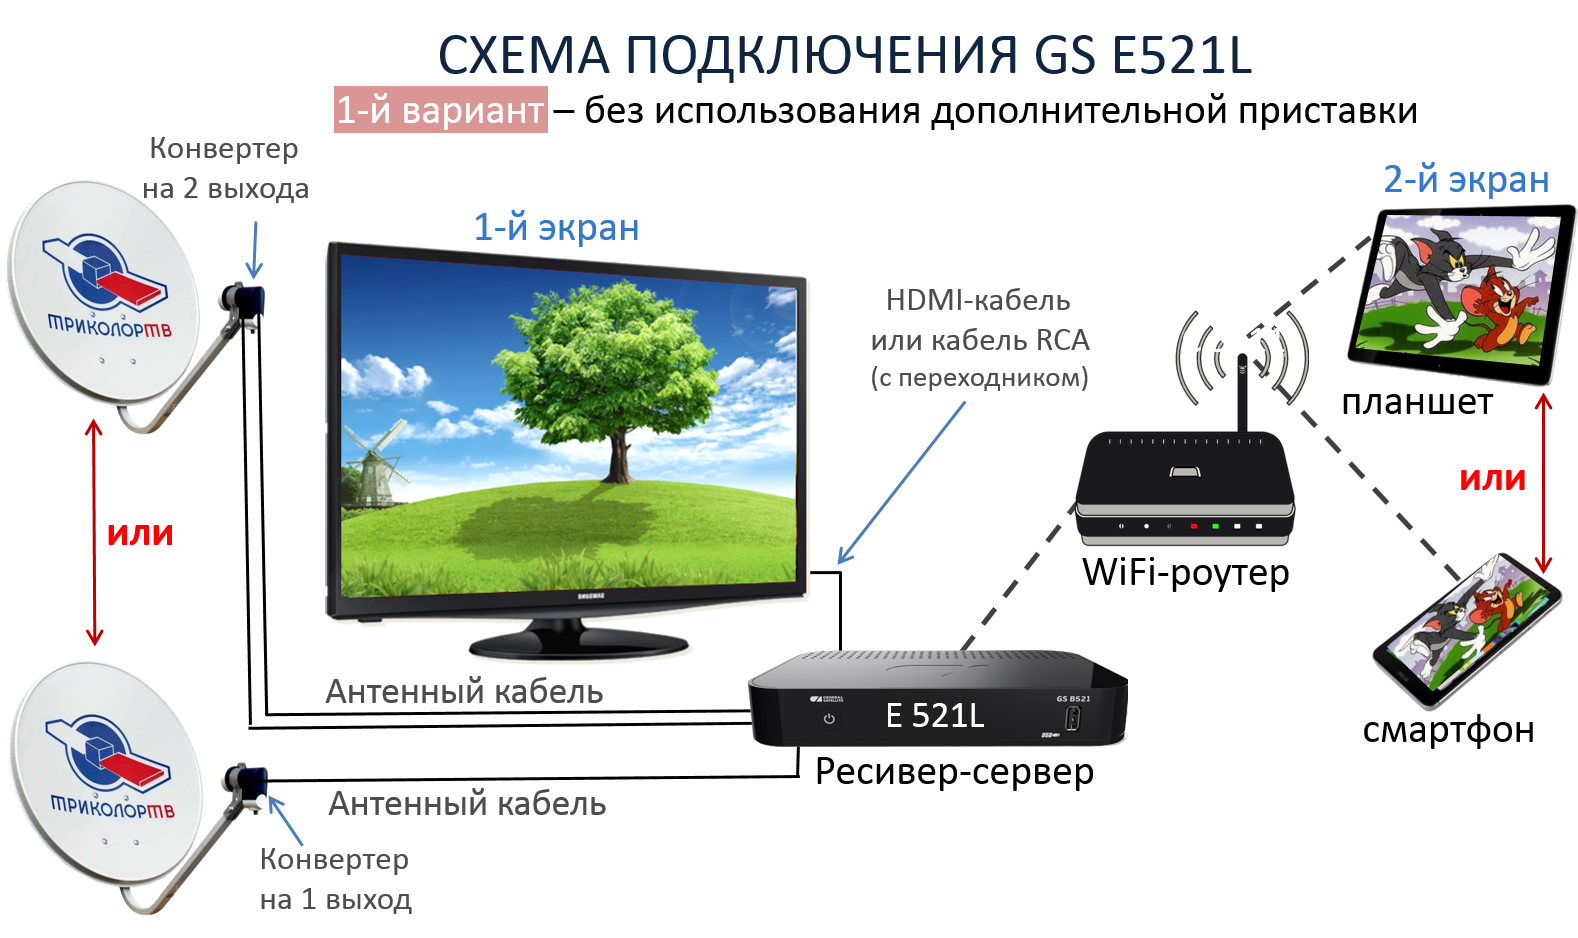 Триколор GS e521l. Схема подключения приемника Триколор на 2 телевизора и 2 приставки. Триколор ТВ приемник GS e521l. Схема подключения спутникового ТВ Триколор.